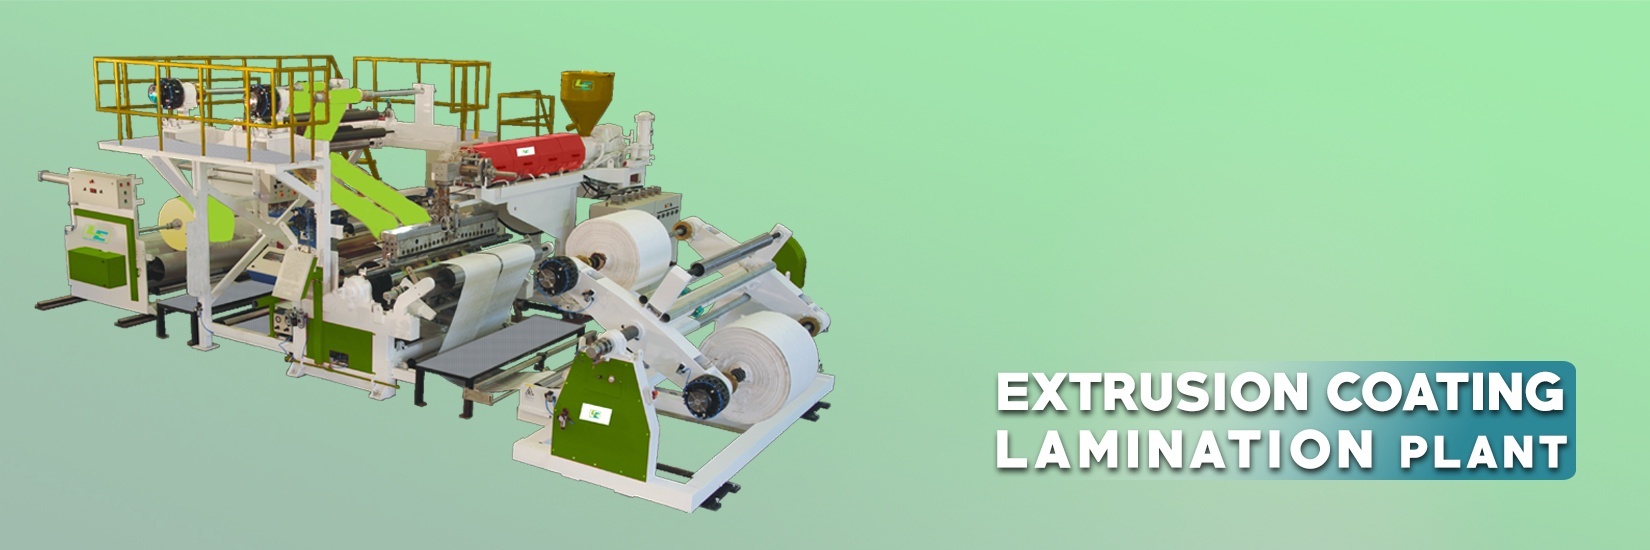 Lamination Machine - Extrusion Coating Lamination Plant